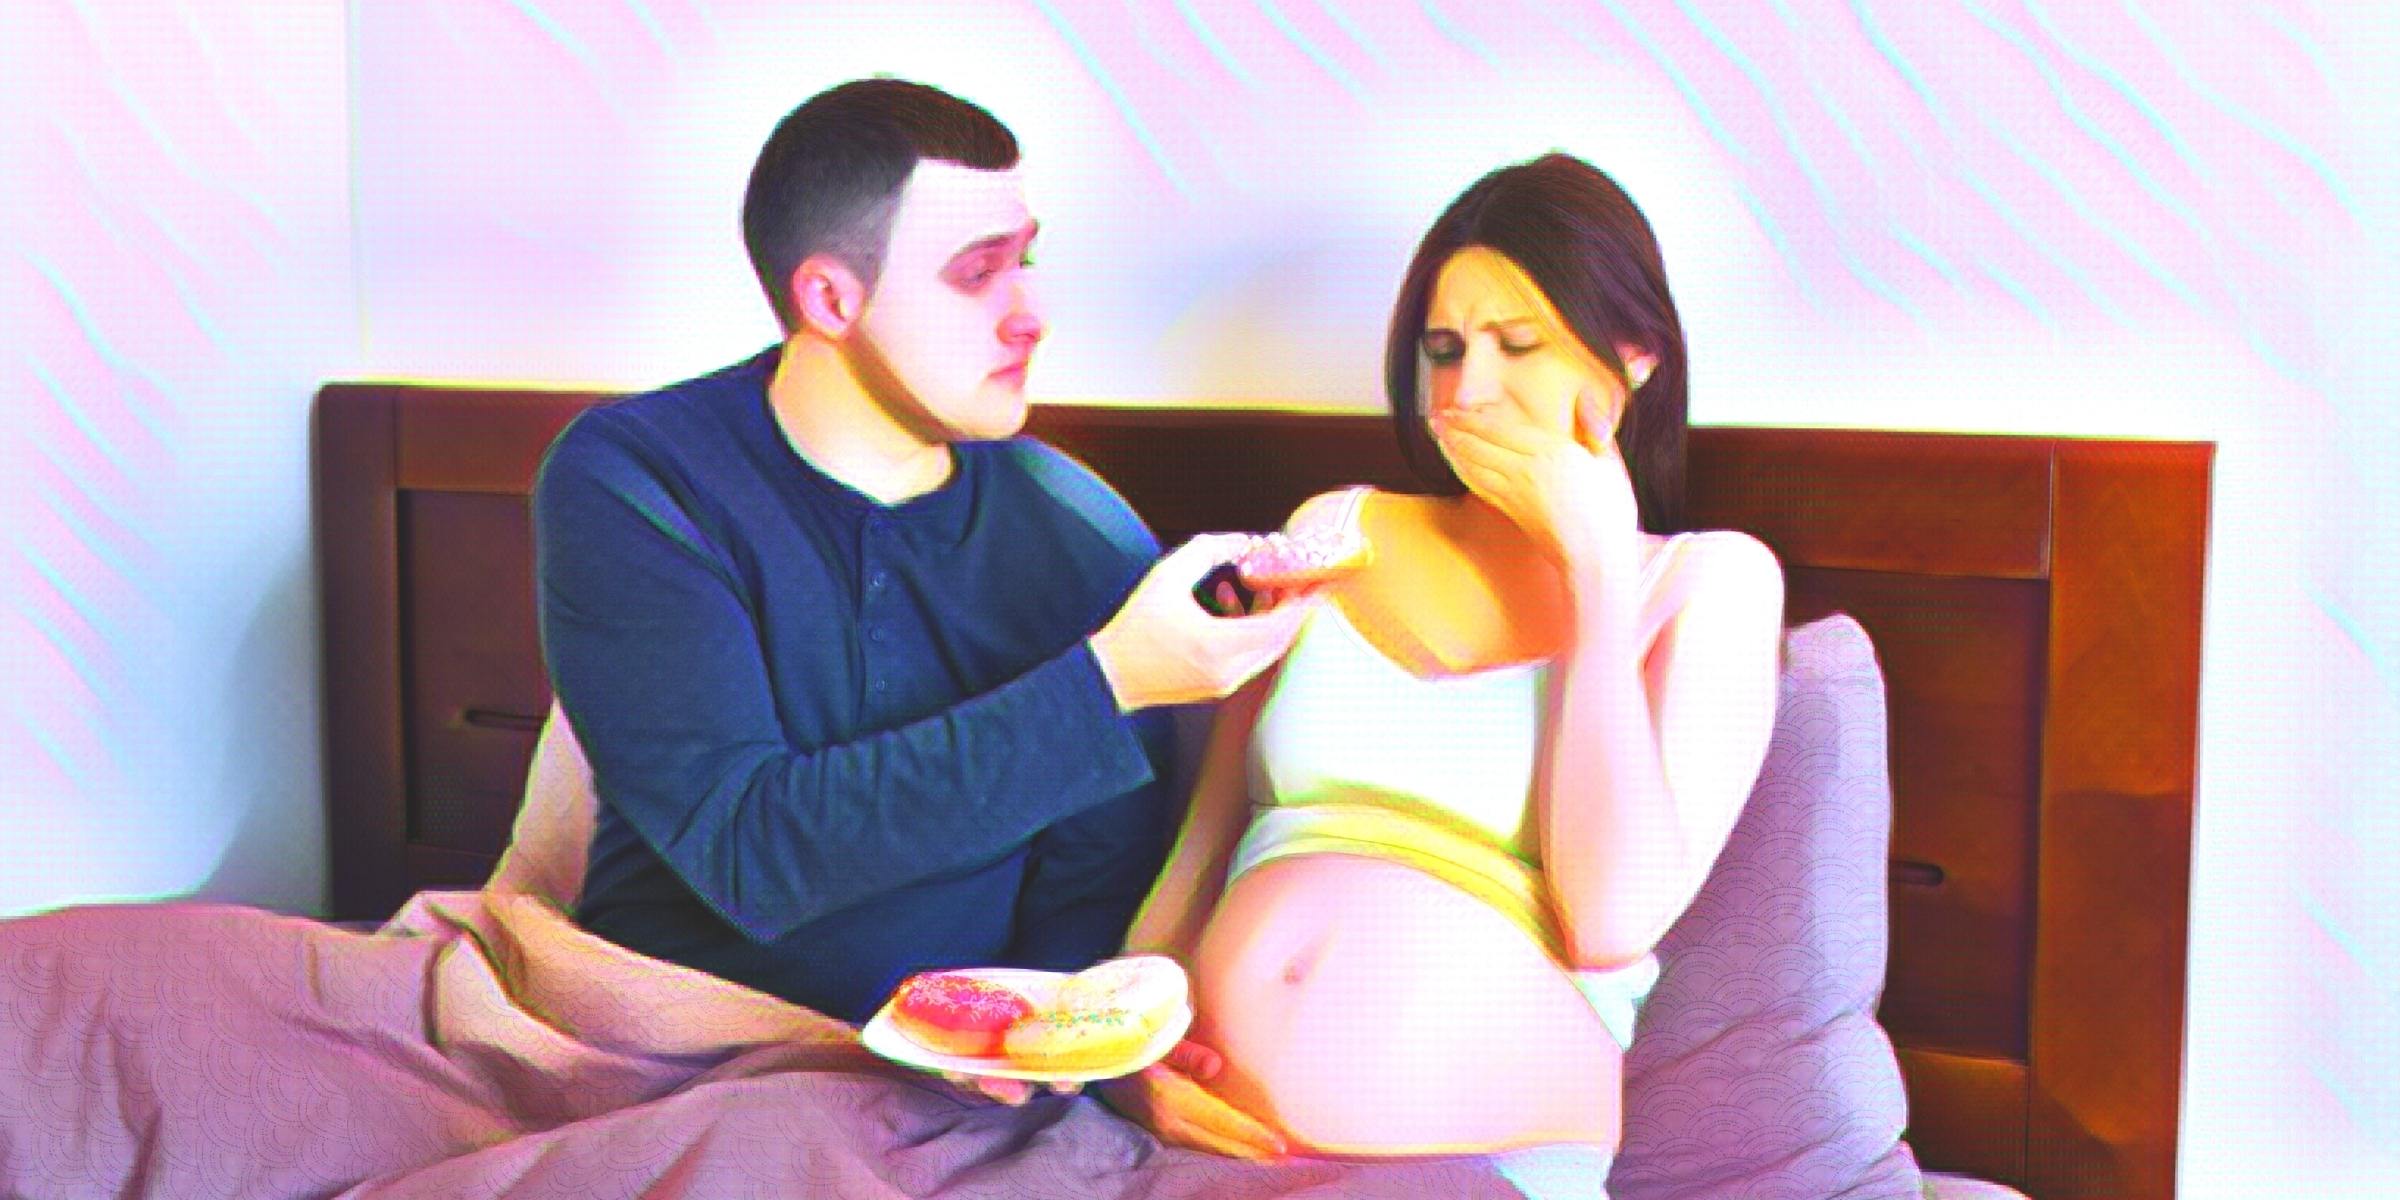 ドーナツを食べさせようとする男性と口をおさえる妊婦さん